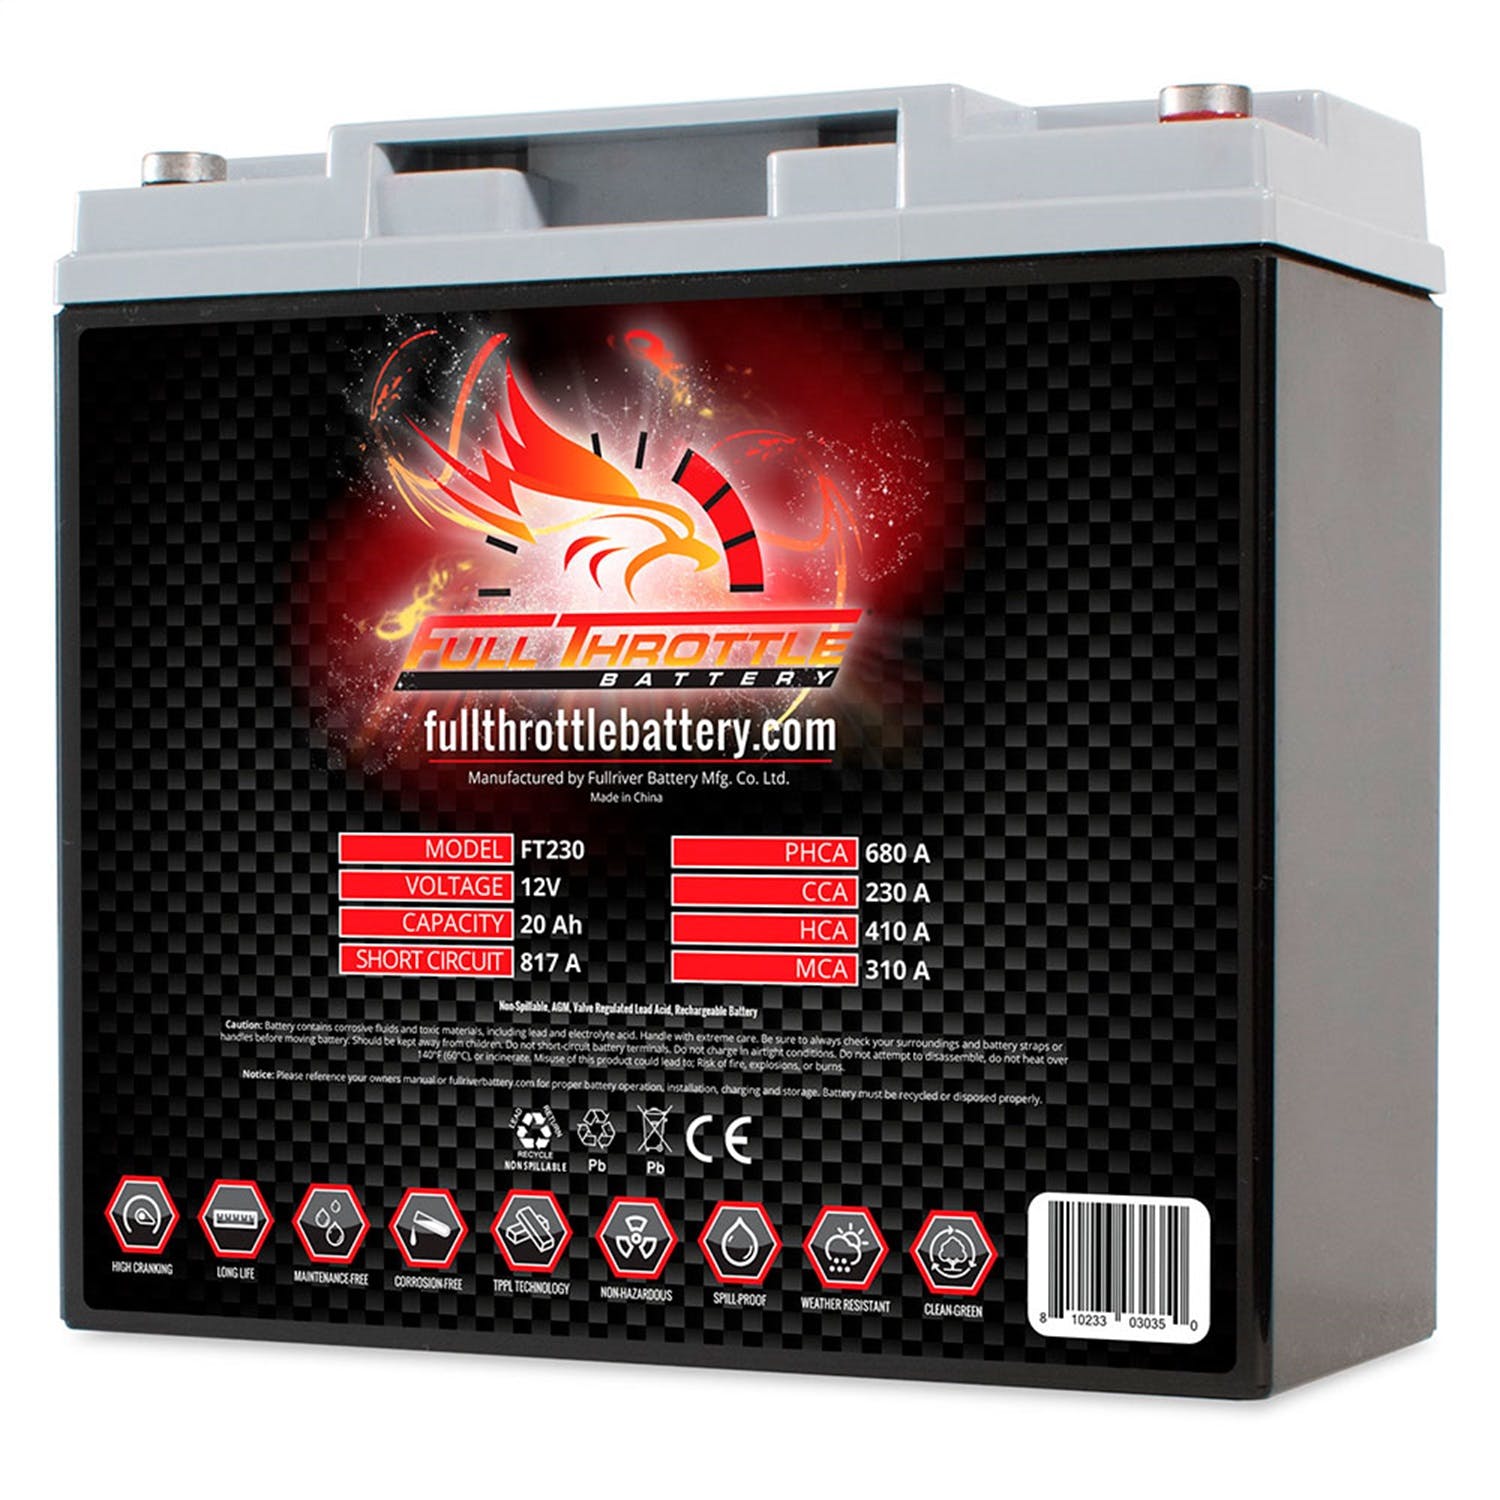 Fullriver Battery FT230 Full Throttle 12V Power Sports Battery